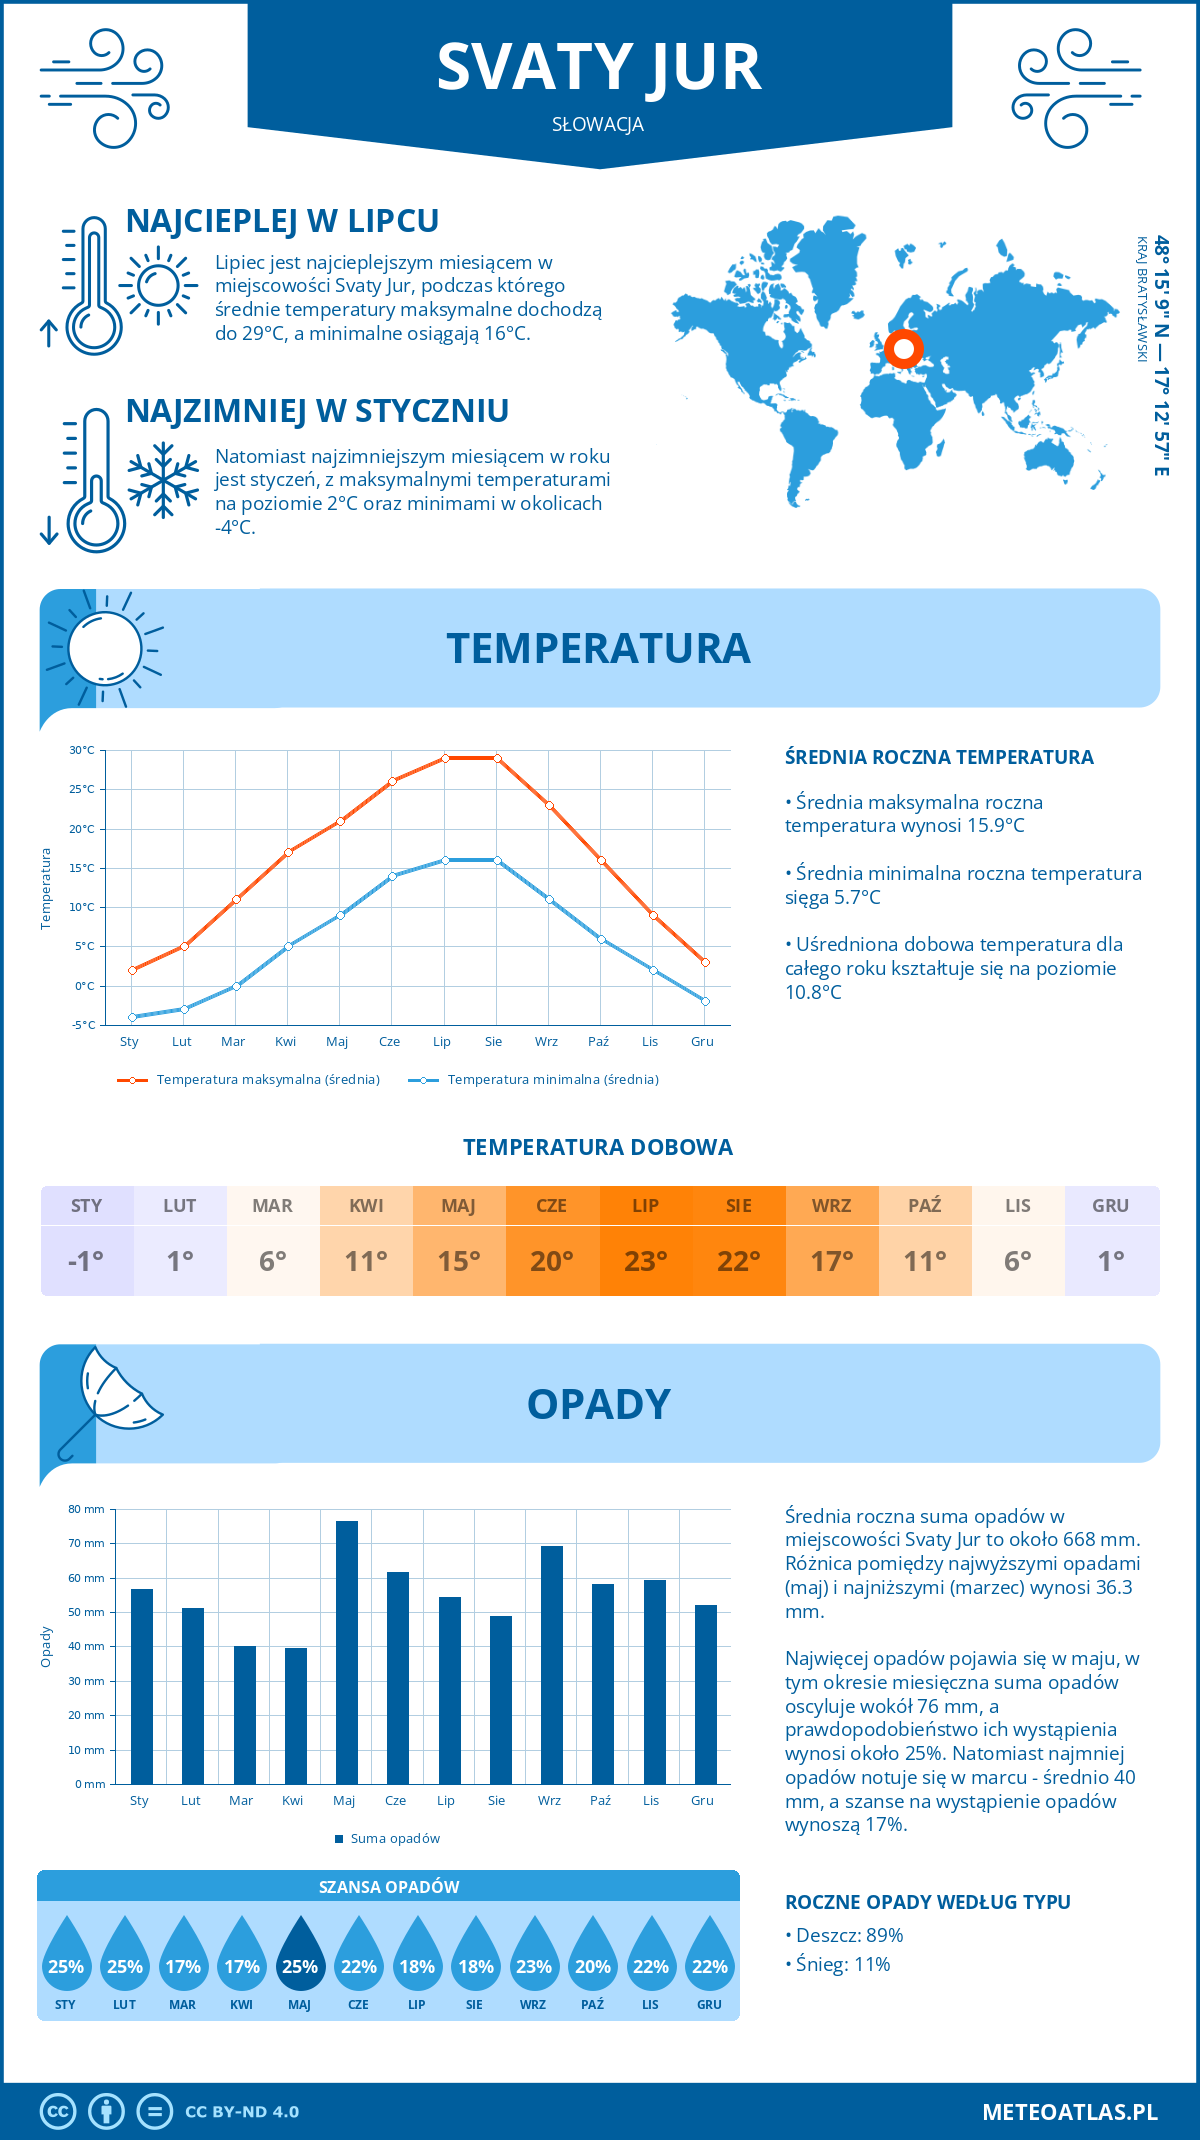 Pogoda Svaty Jur (Słowacja). Temperatura oraz opady.